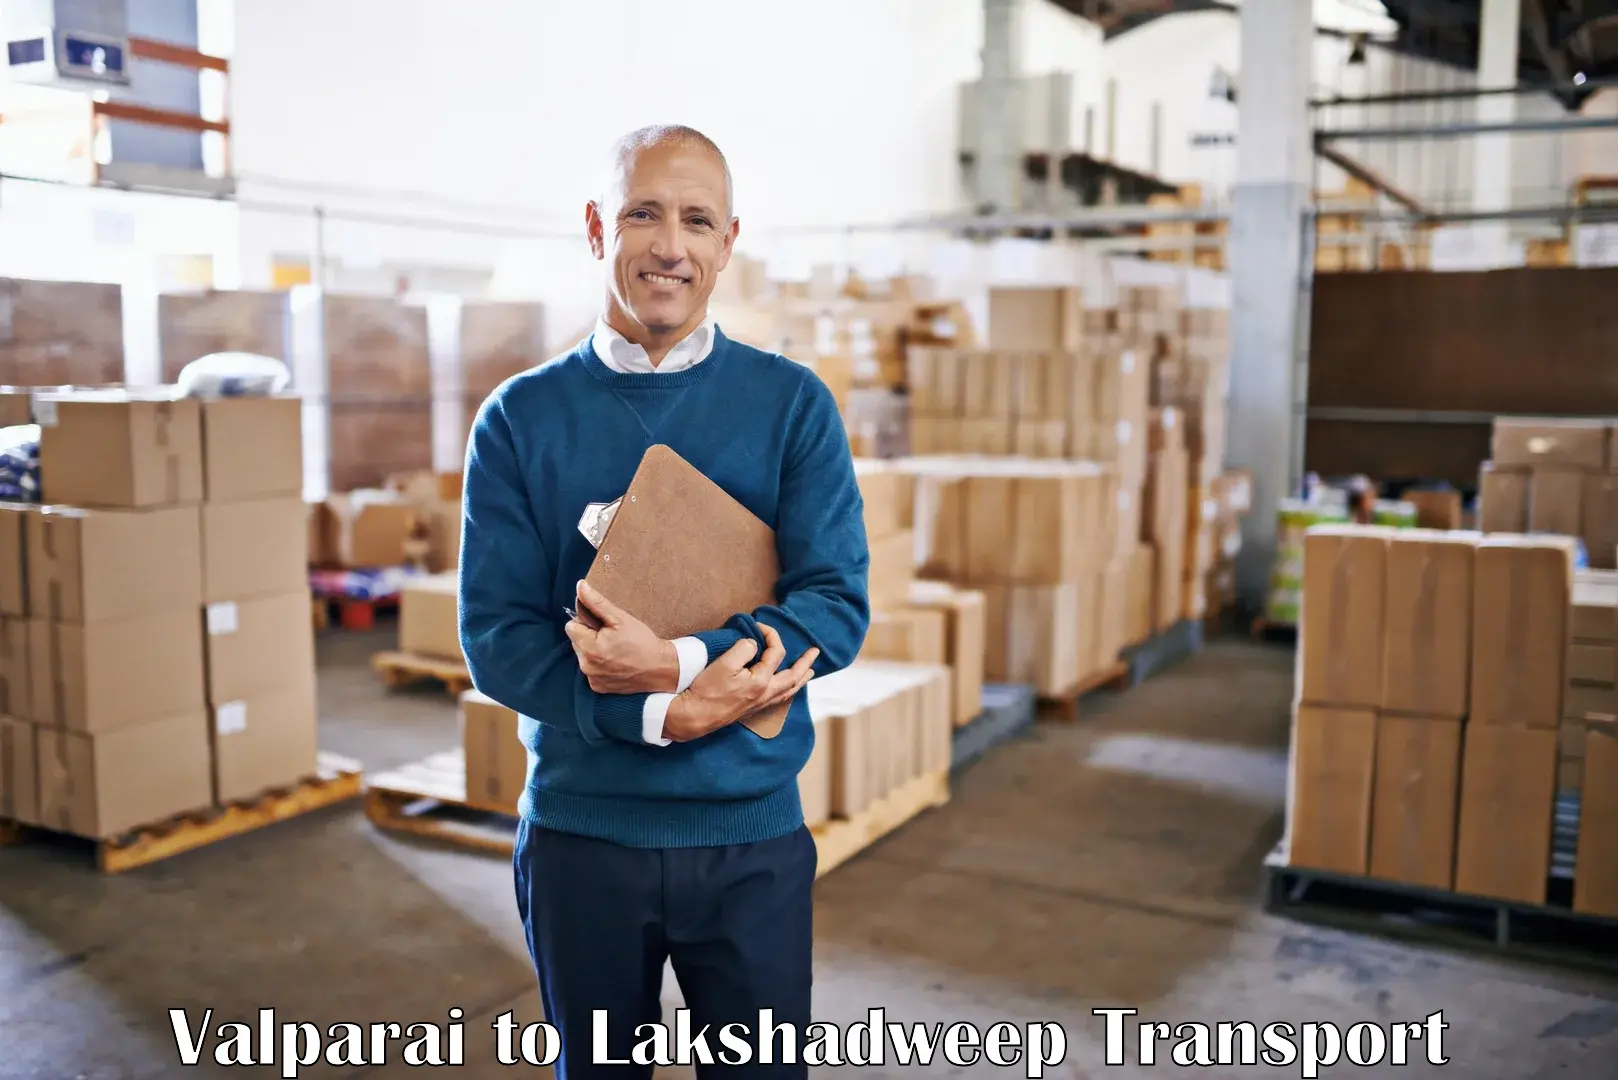 Furniture transport service Valparai to Lakshadweep